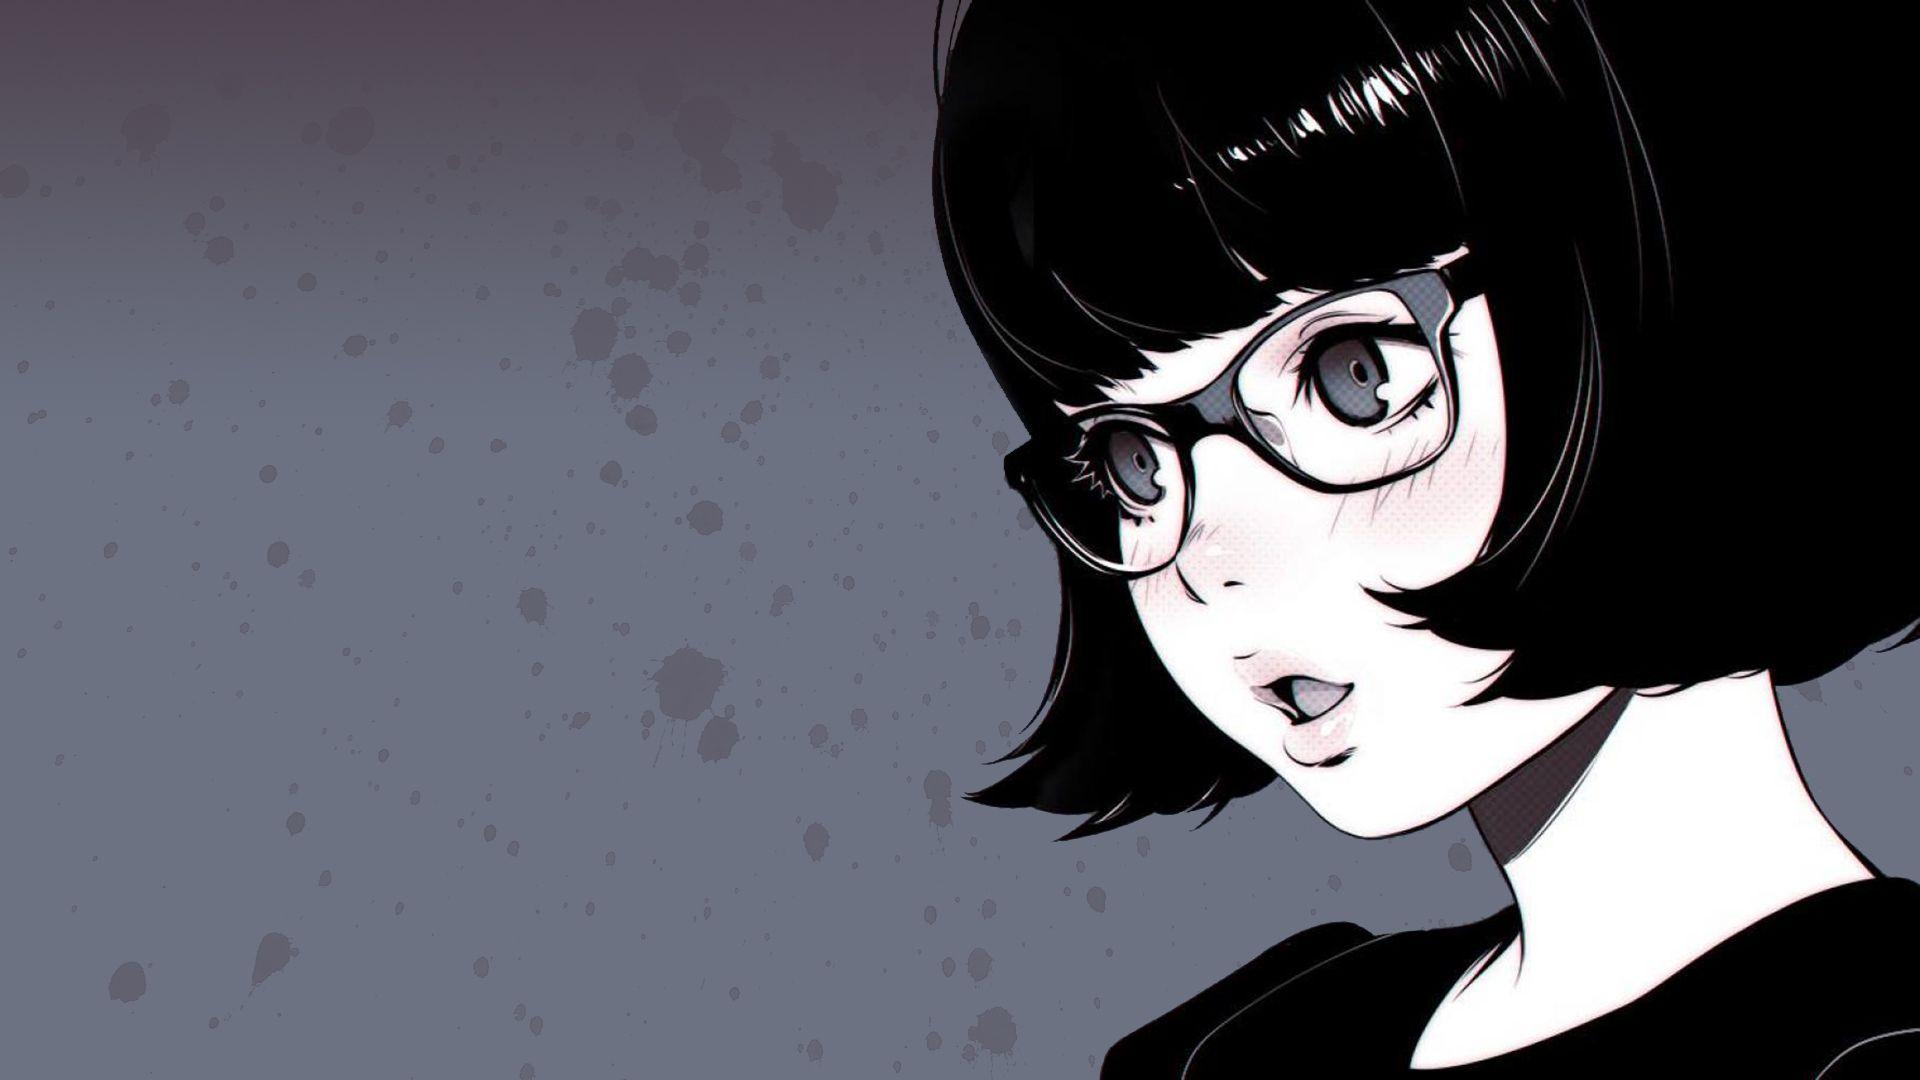 eyes, anime girls, glasses  4800x2400 Wallpaper 